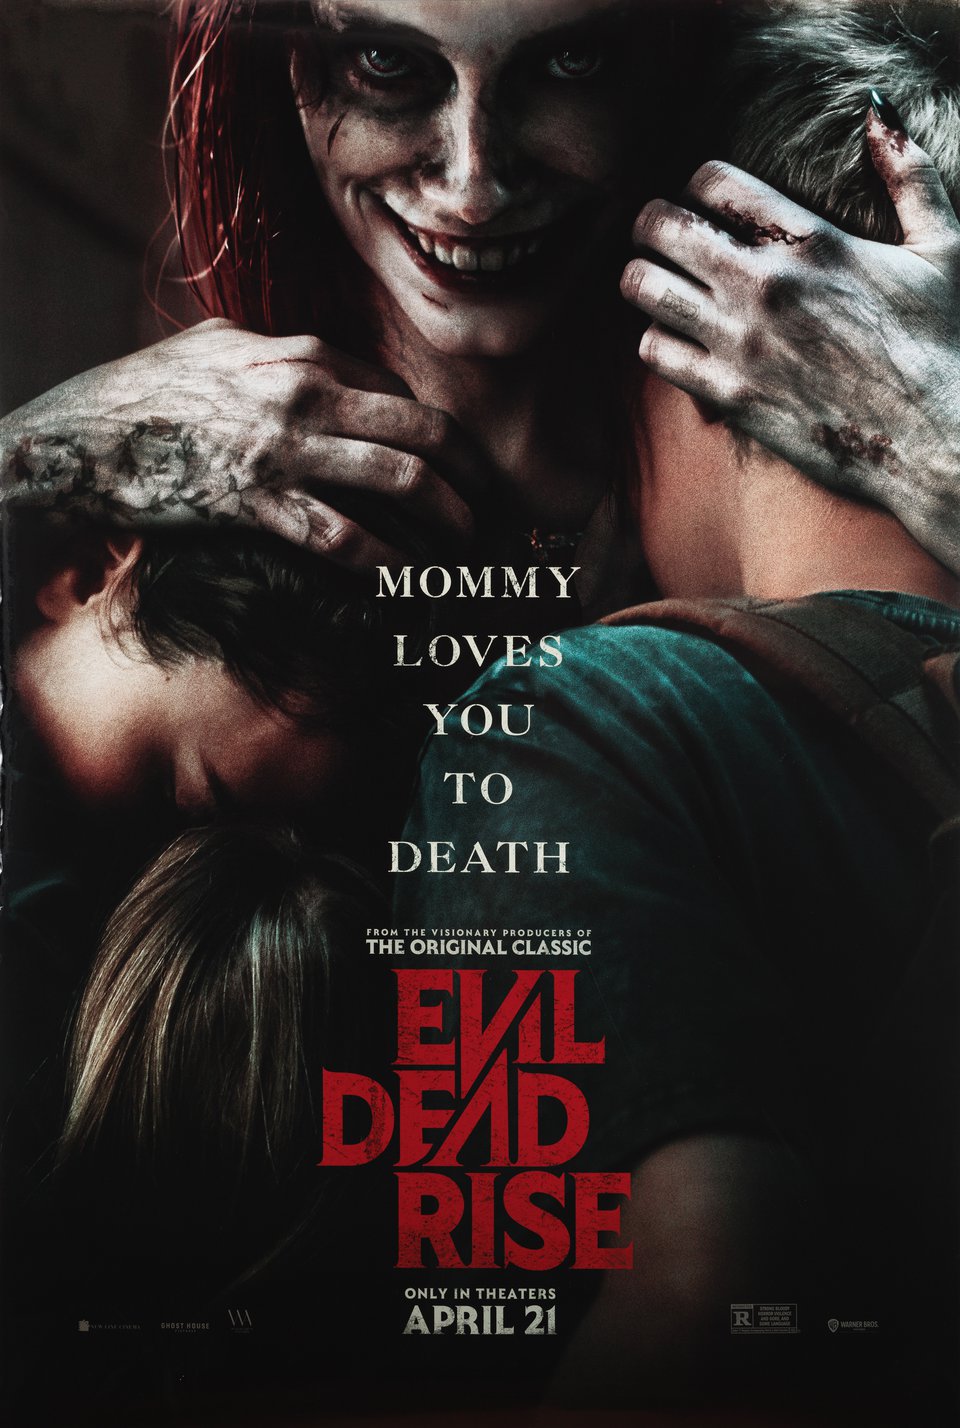 Evil Dead Rise (2023) Review